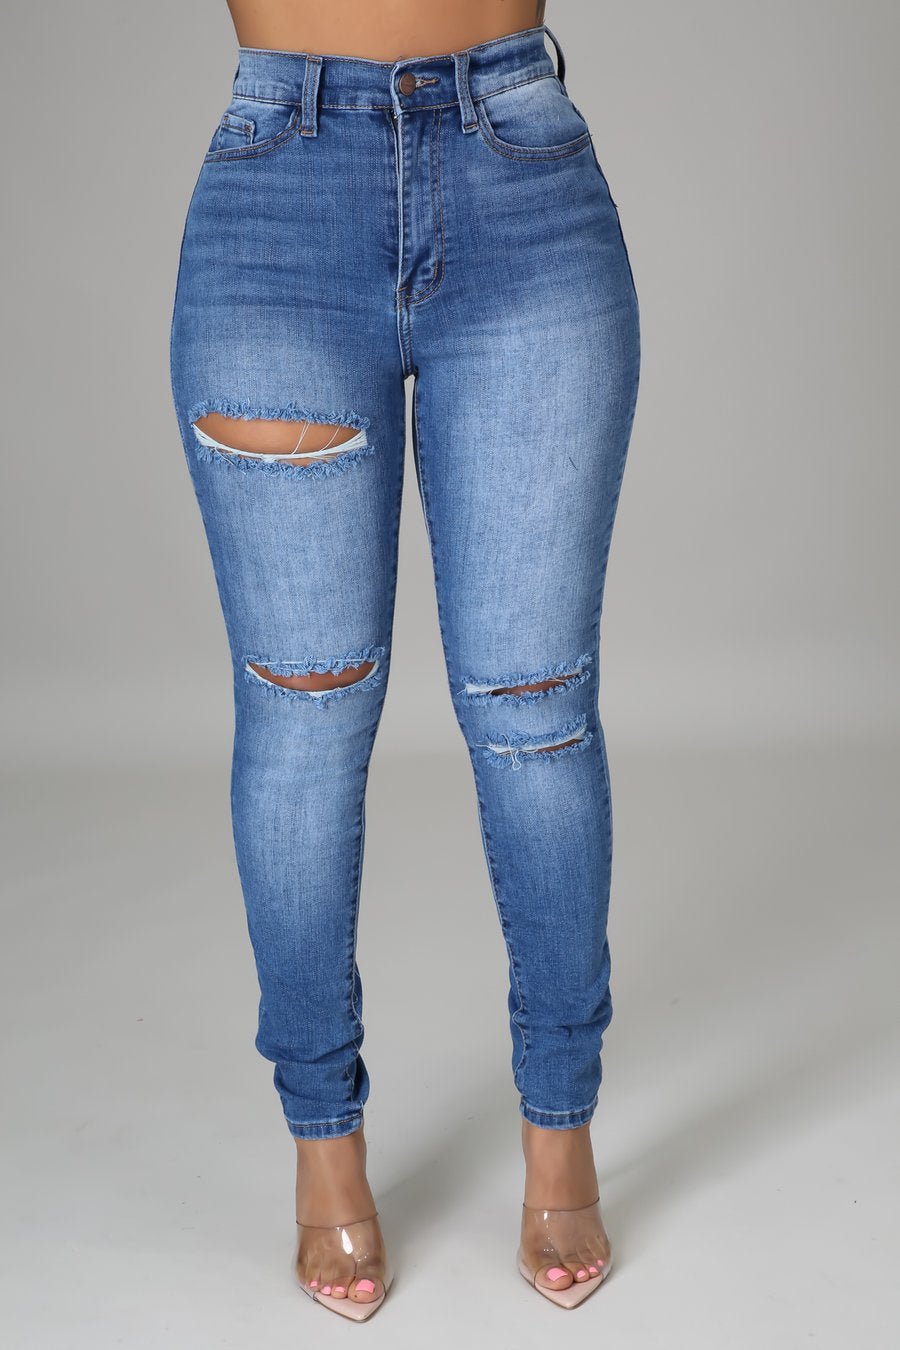 XO Jeans Medium Wash - Ali’s Couture 